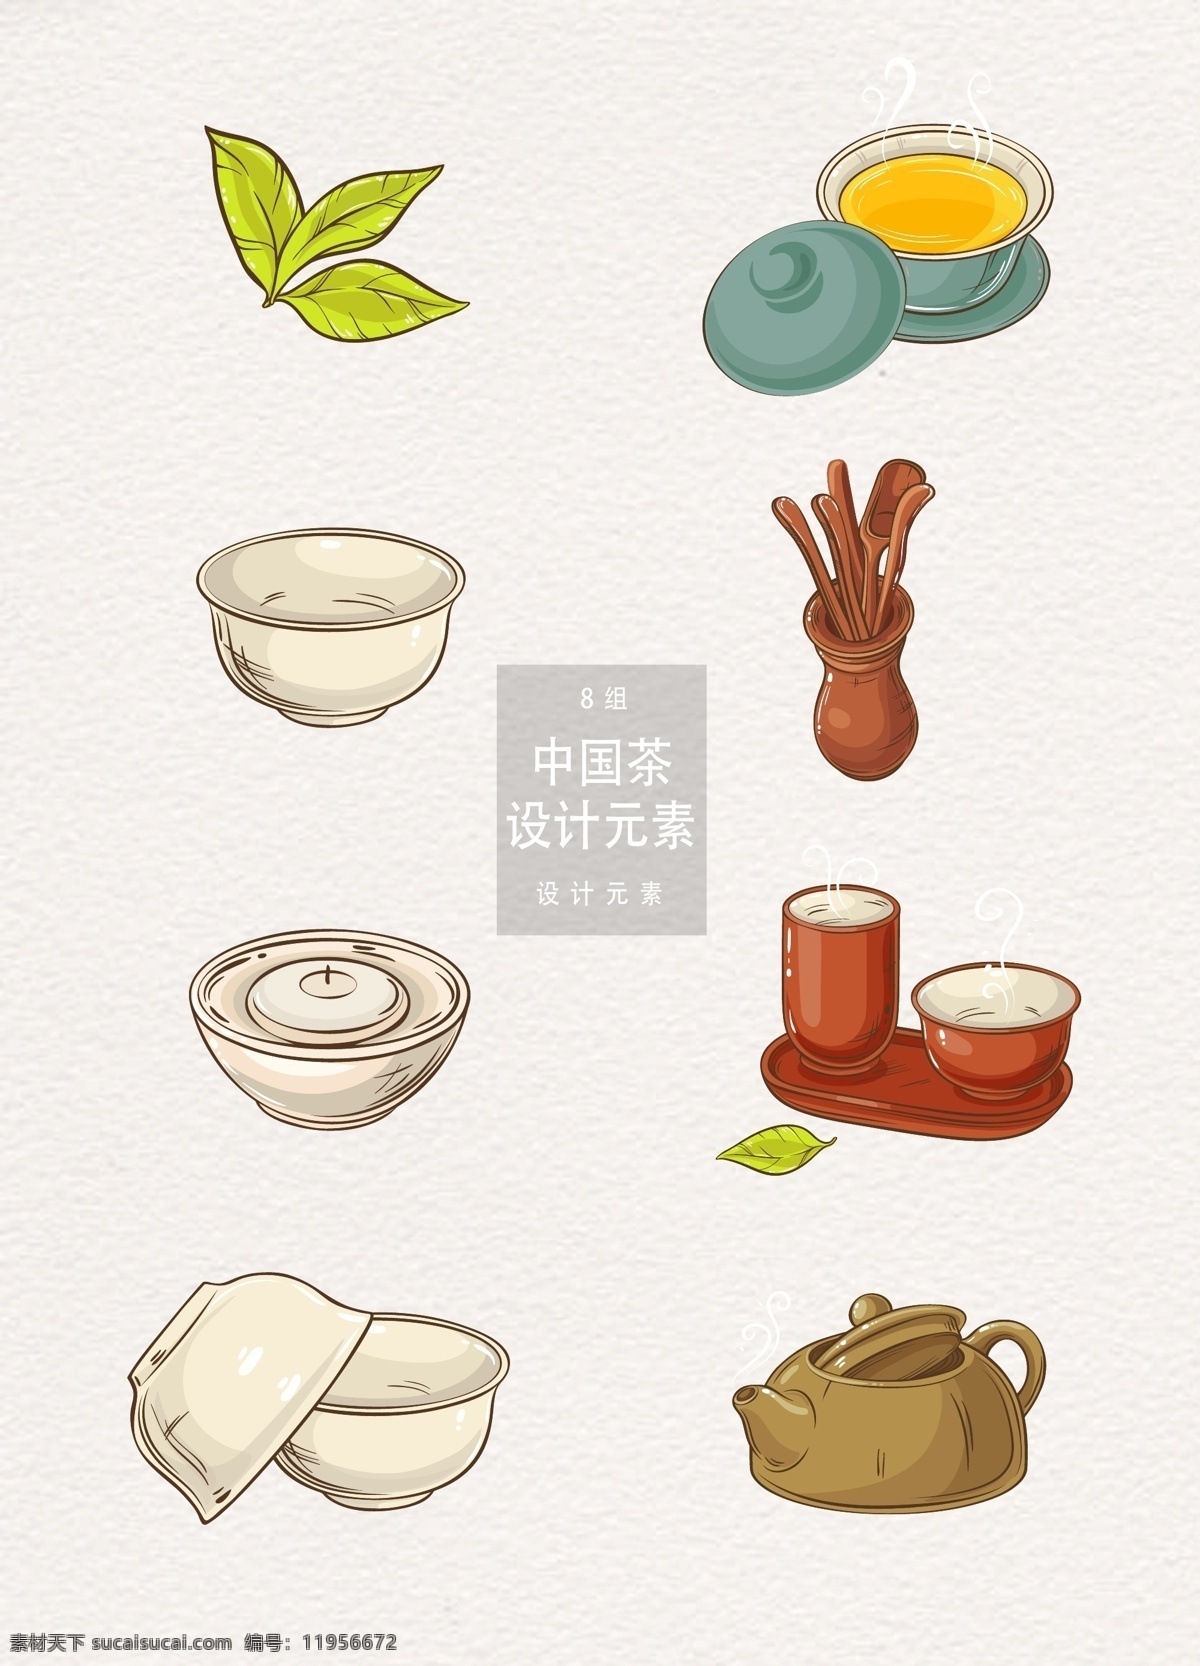 中国 茶 手绘 元素 茶道 茶叶 茶壶 叶子 绿叶 设计元素 中国茶 茶饮 茶具